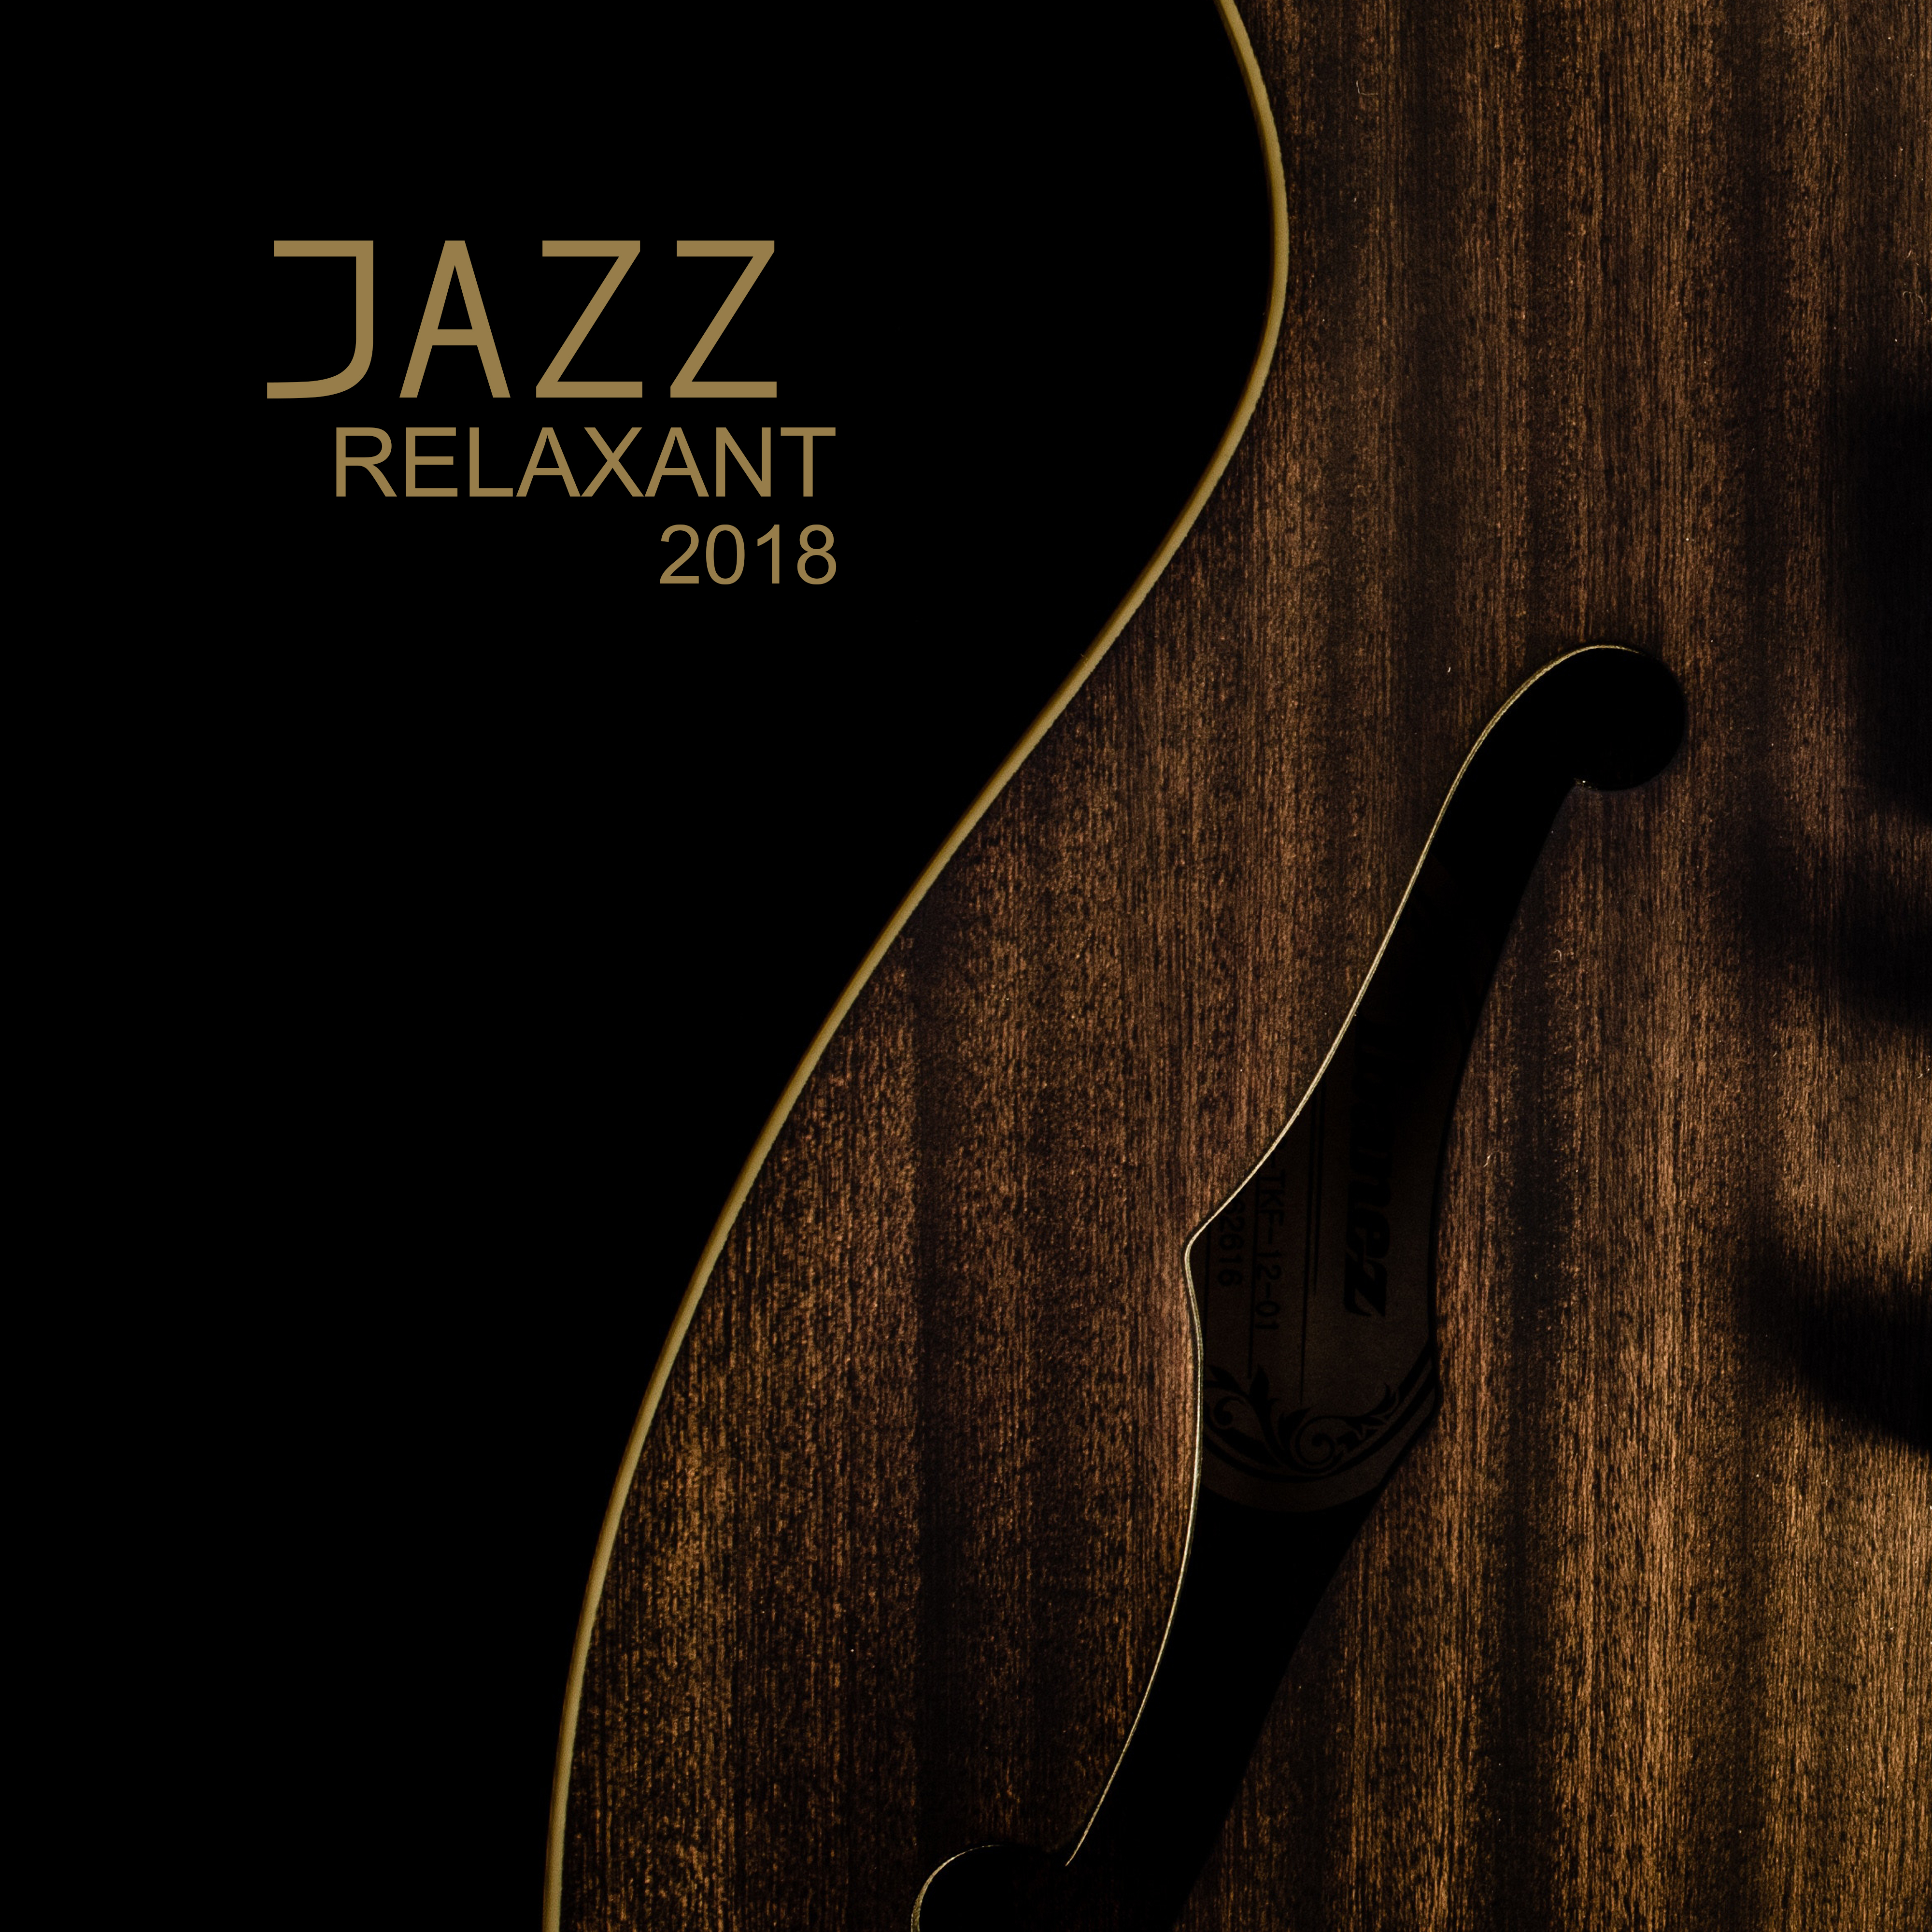 Jazz relaxant 2018